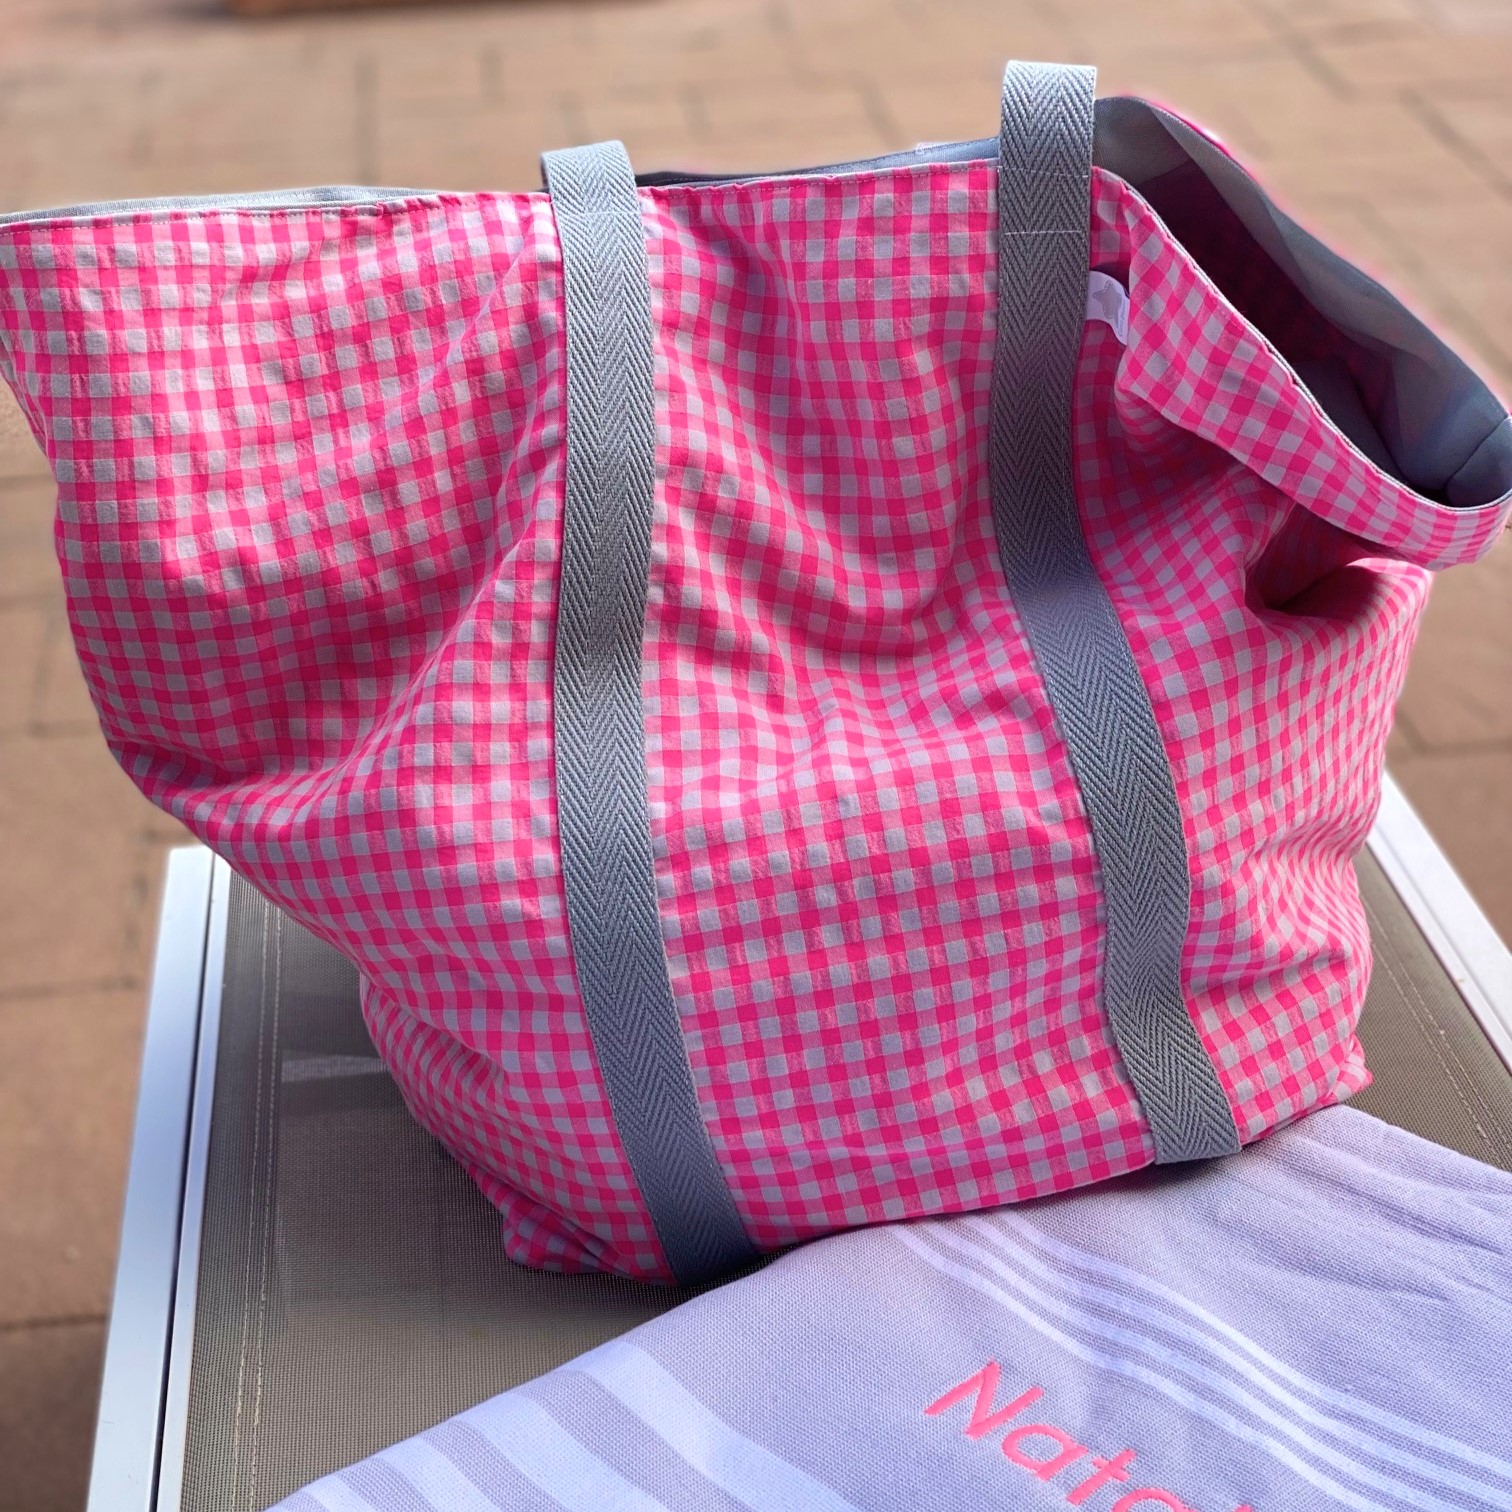 Bolsa XL playa personalizada en tela diseño exclusivo Cotó Blanc